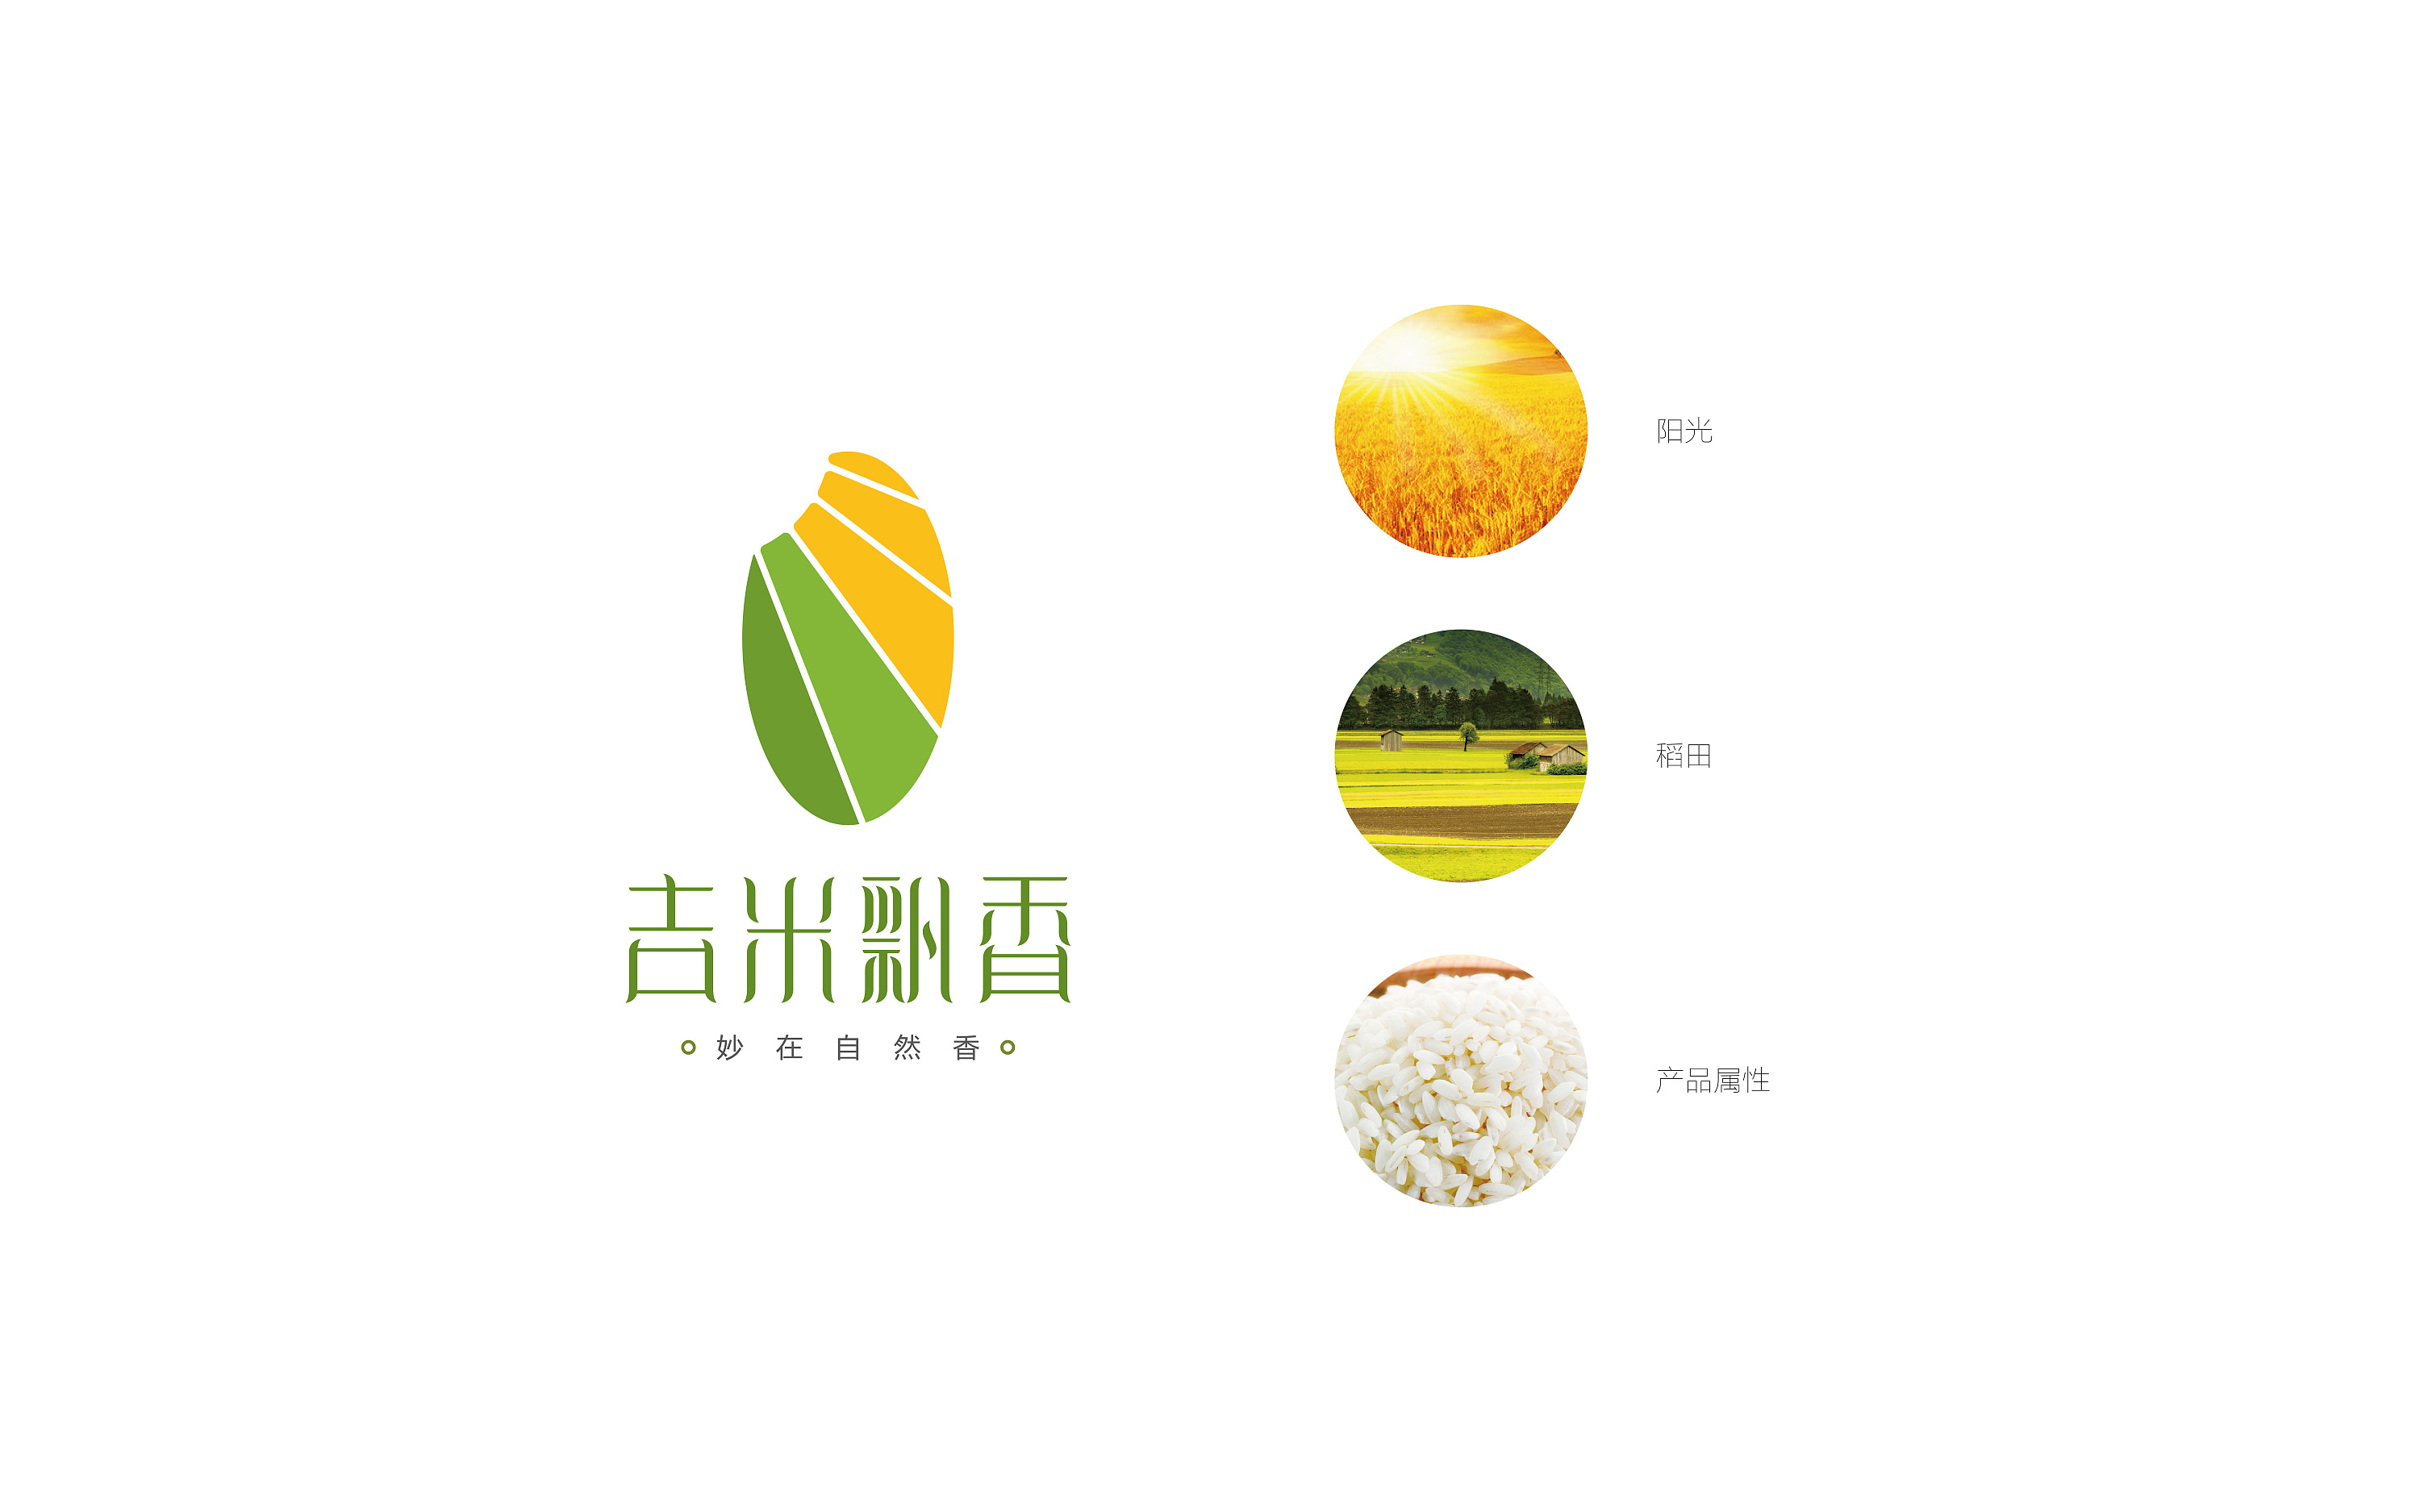 大米logo与包装